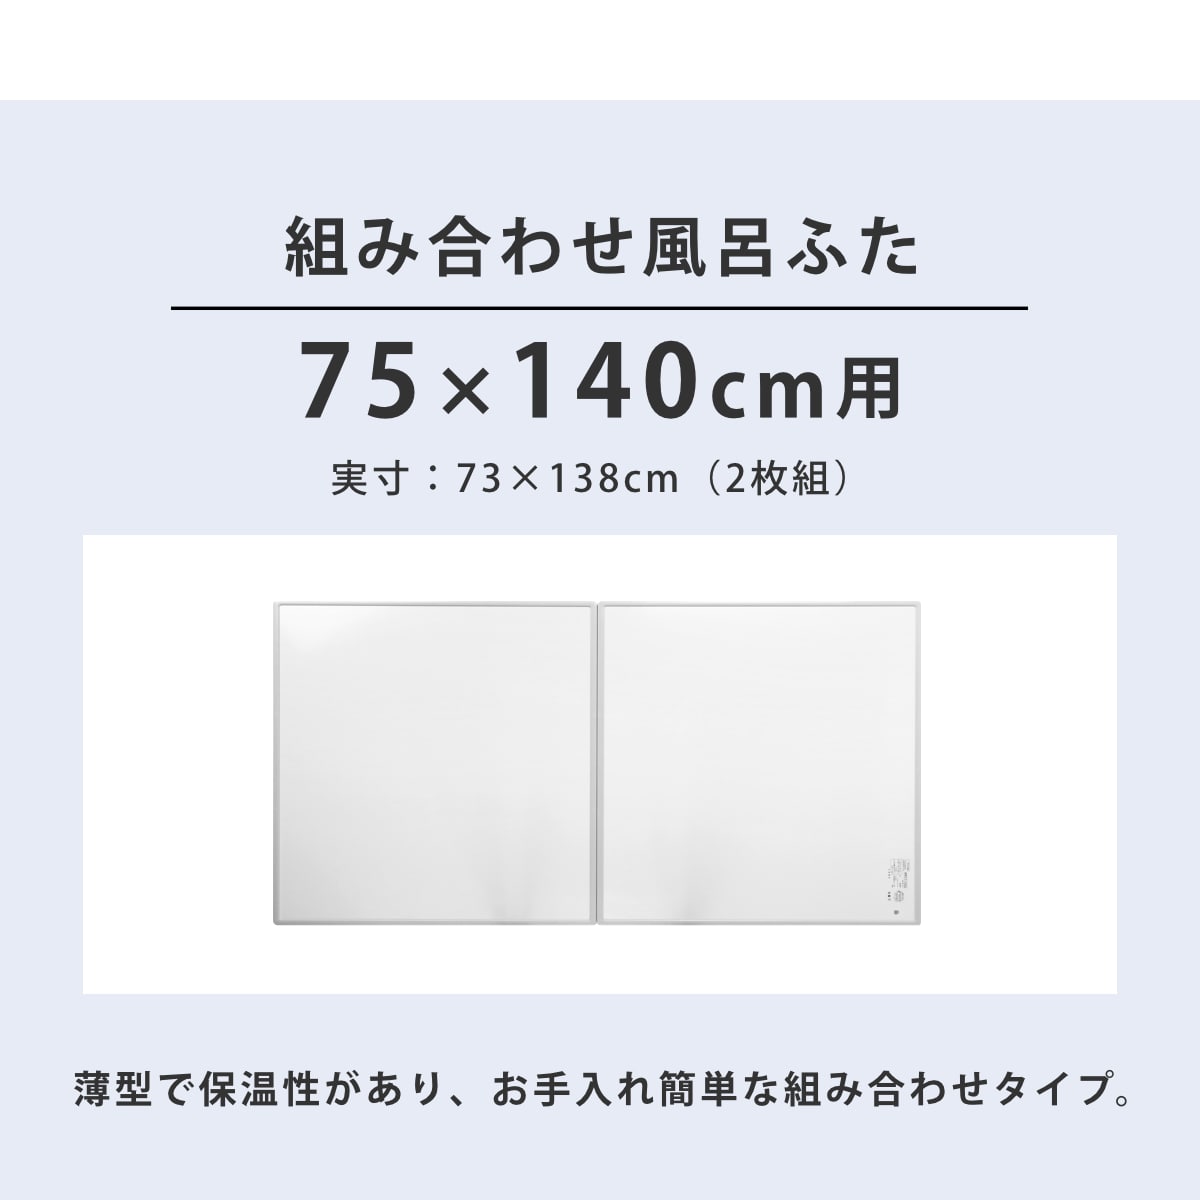 風呂ふた 組み合わせ 75×140cm 用 L14 2枚組 日本製 抗菌 実寸73×138cm